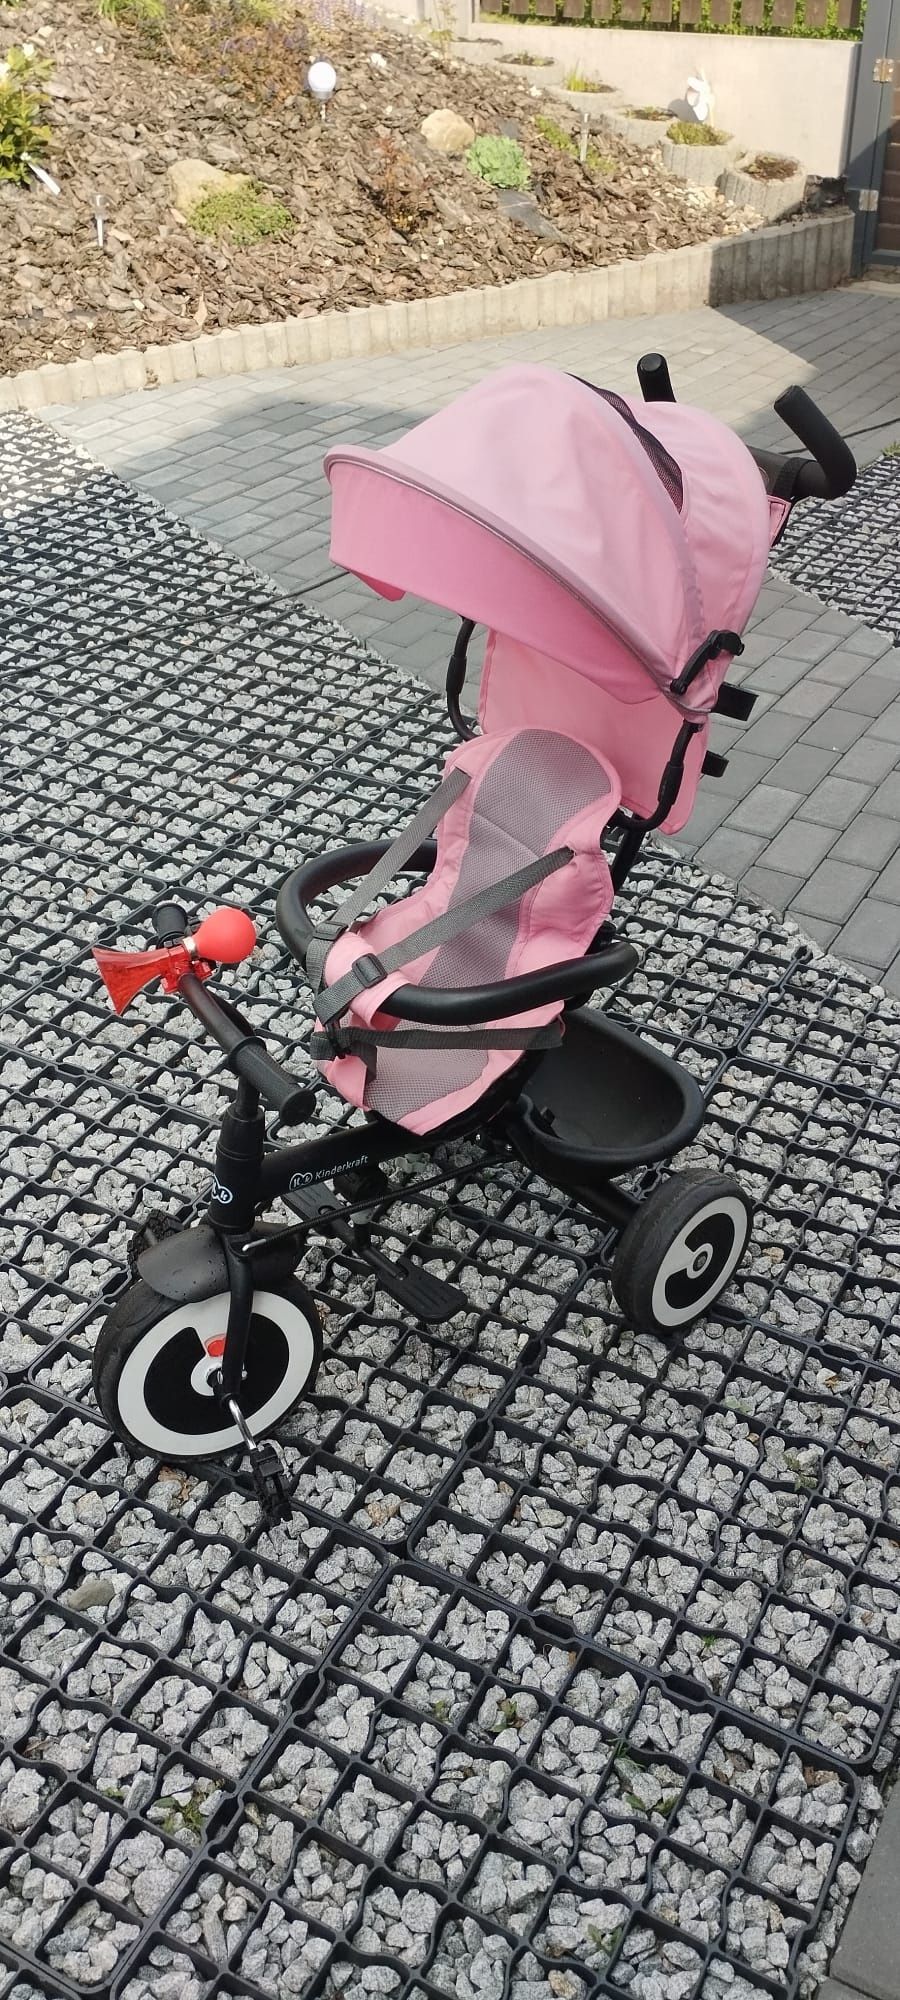 Rowerek trójkołowy Kinder Kraft różowy